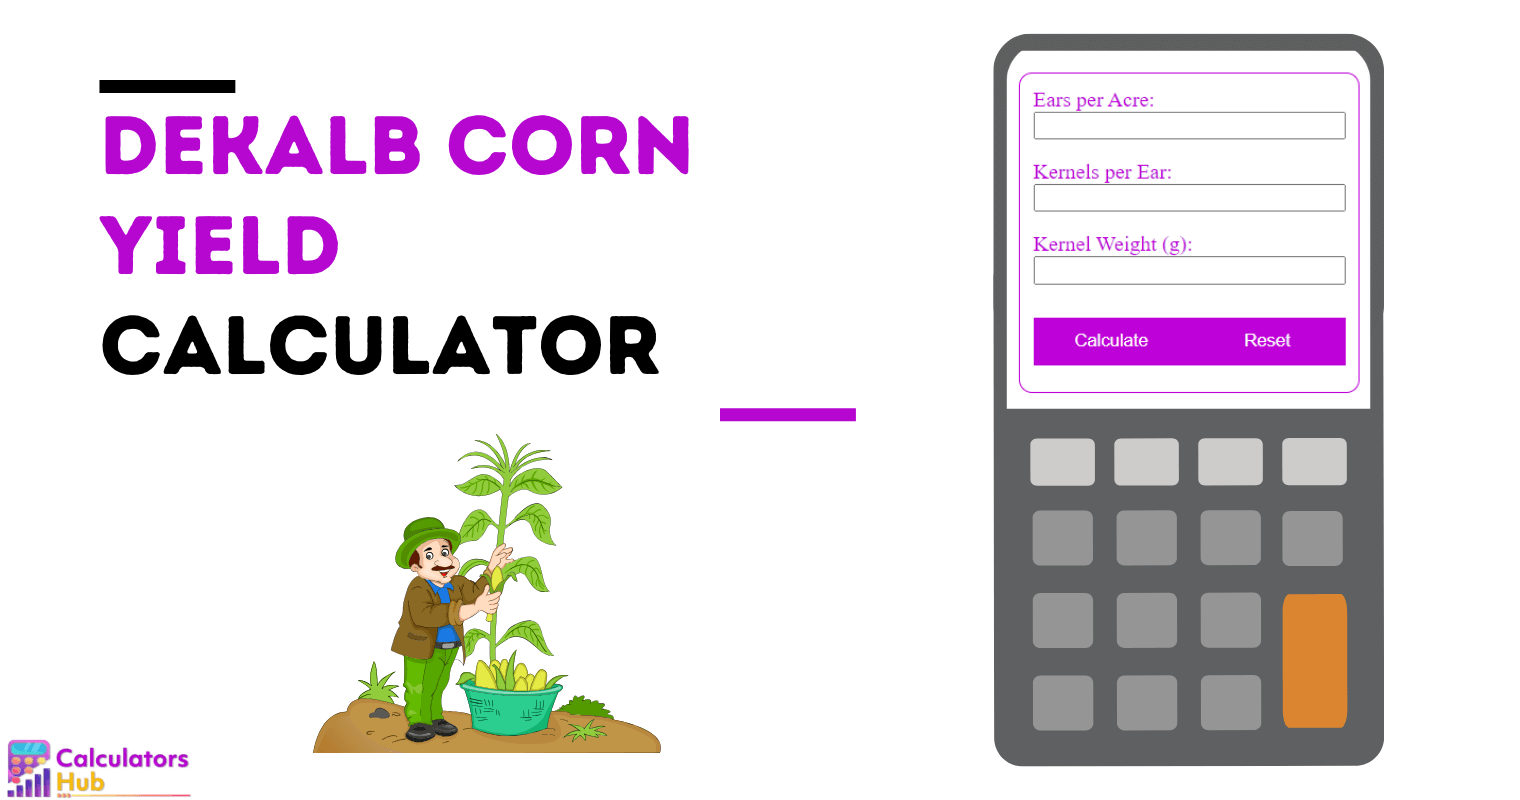 Dekalb Corn Yield Calculator